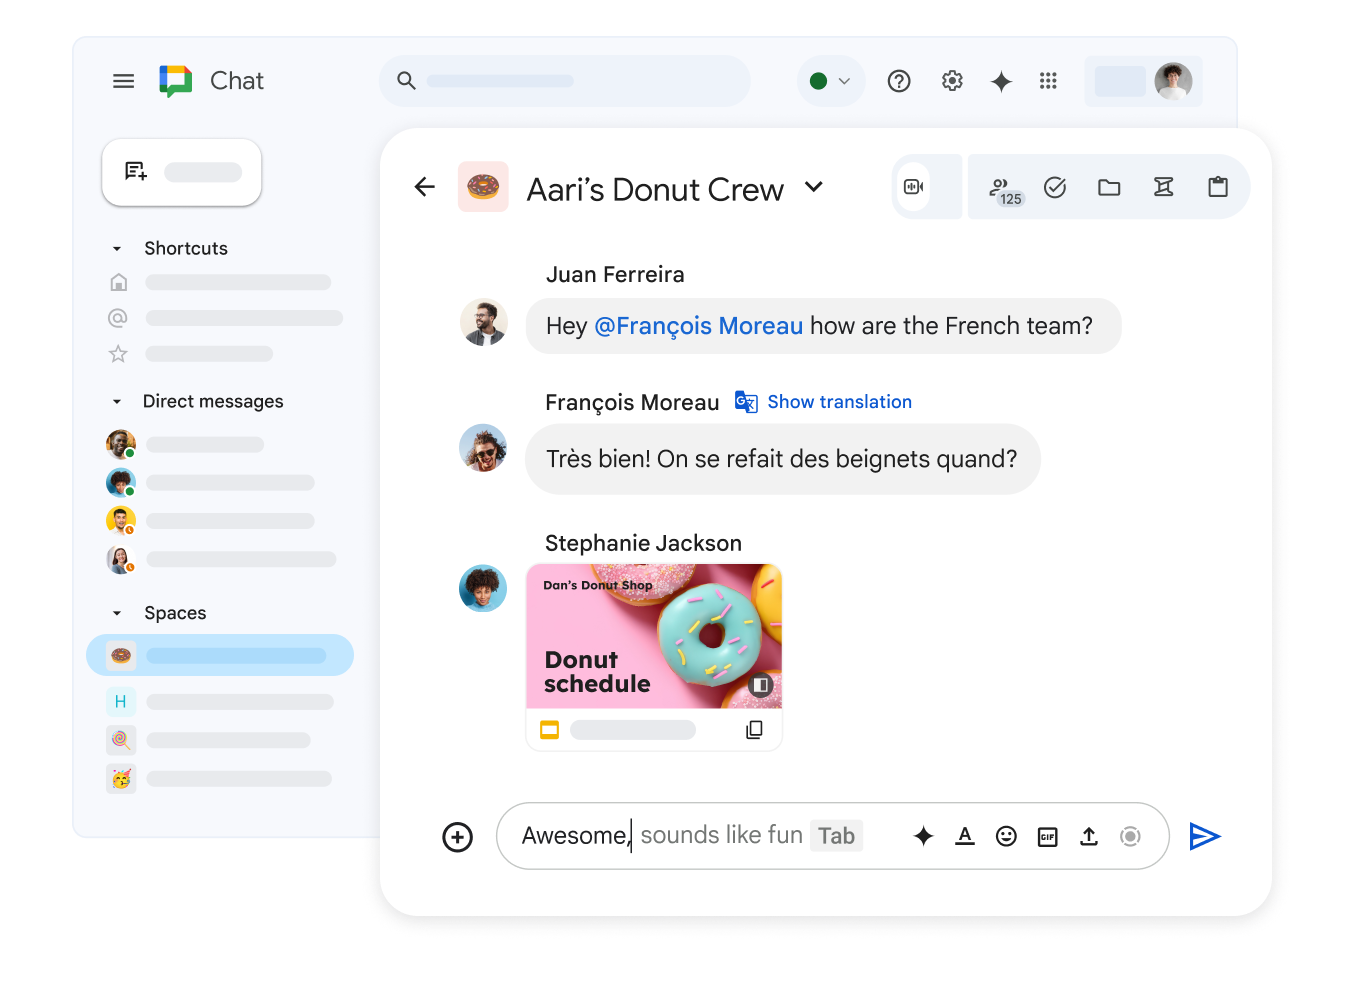 Pokój Google Chat o nazwie „Pączkowa ekipa Dana”, w którym widać udostępnioną prezentację Google oraz wiadomość w języku francuskim z opcją wyświetlenia tłumaczenia.